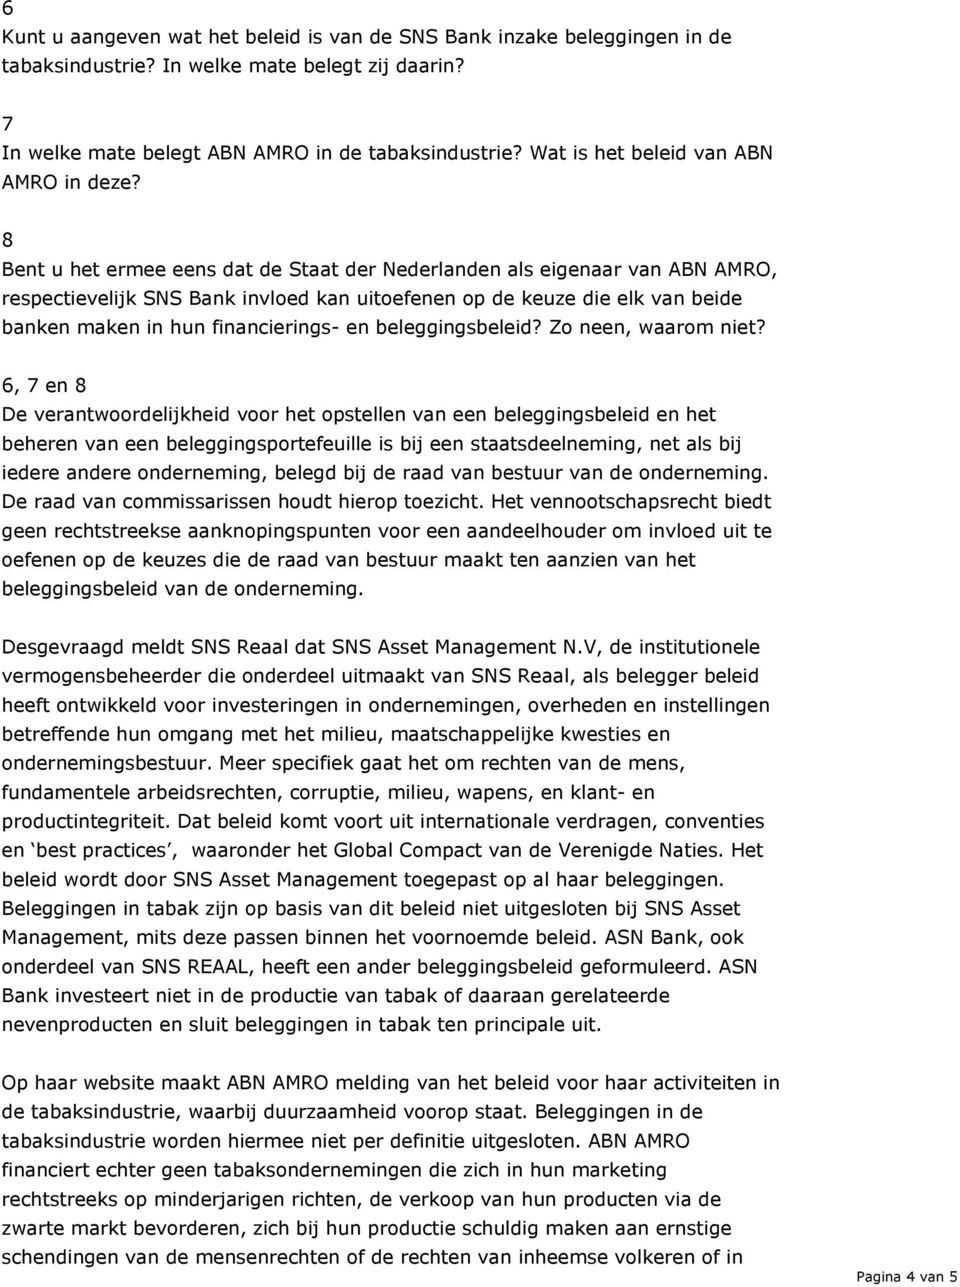 8 Bent u het ermee eens dat de Staat der Nederlanden als eigenaar van ABN AMRO, respectievelijk SNS Bank invloed kan uitoefenen op de keuze die elk van beide banken maken in hun financierings- en